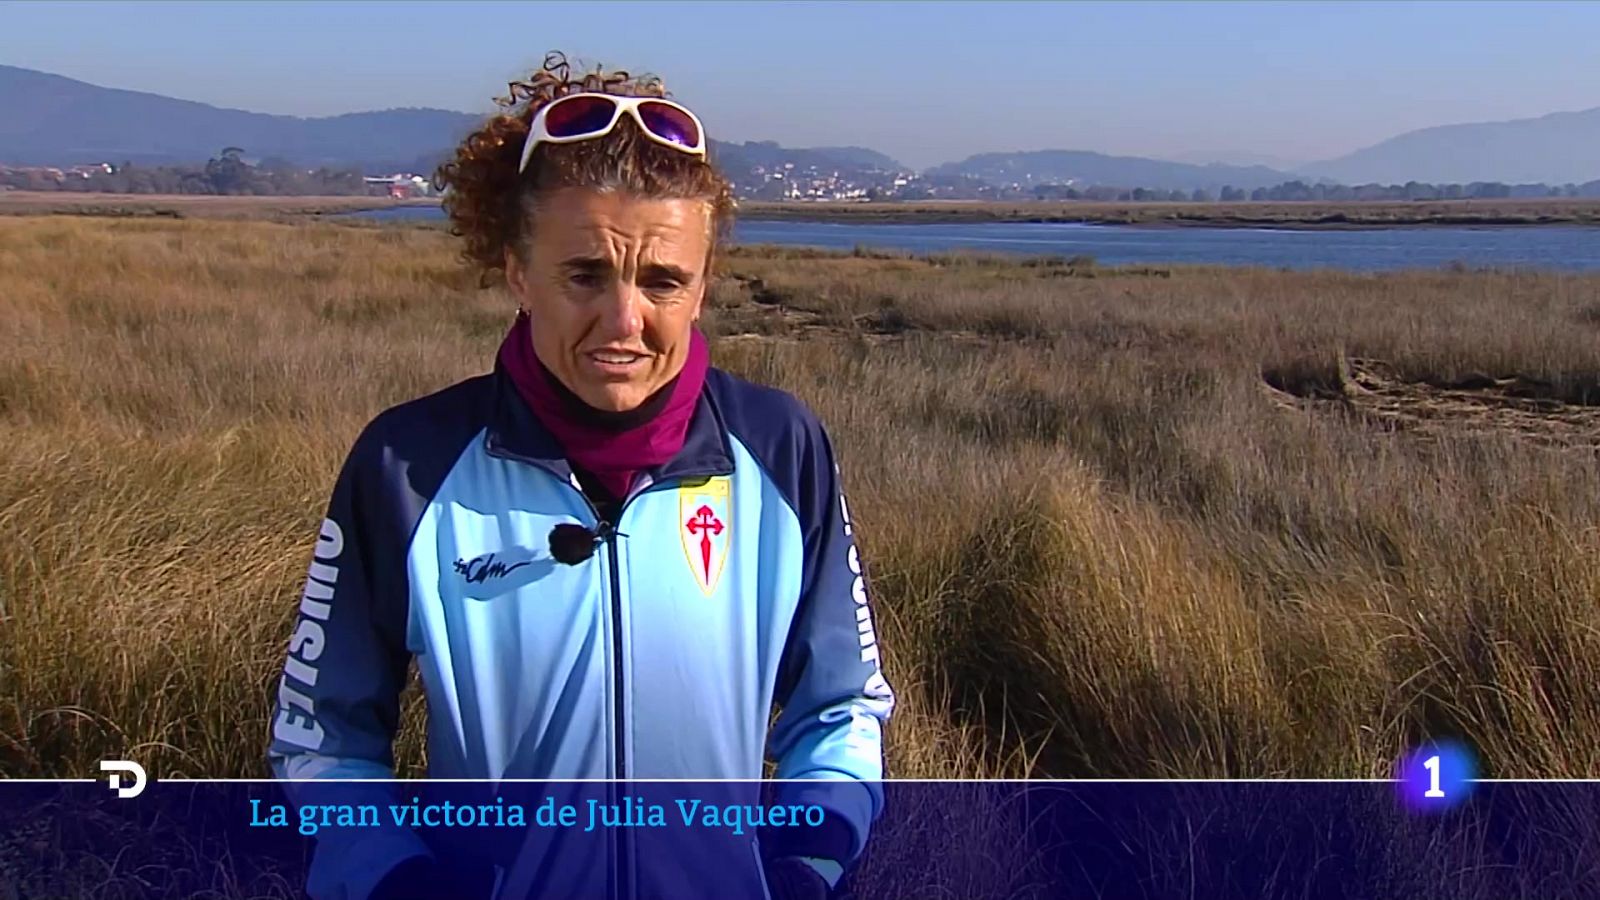 Julia Vaquero, la salud mental y el atletismo 20 años después